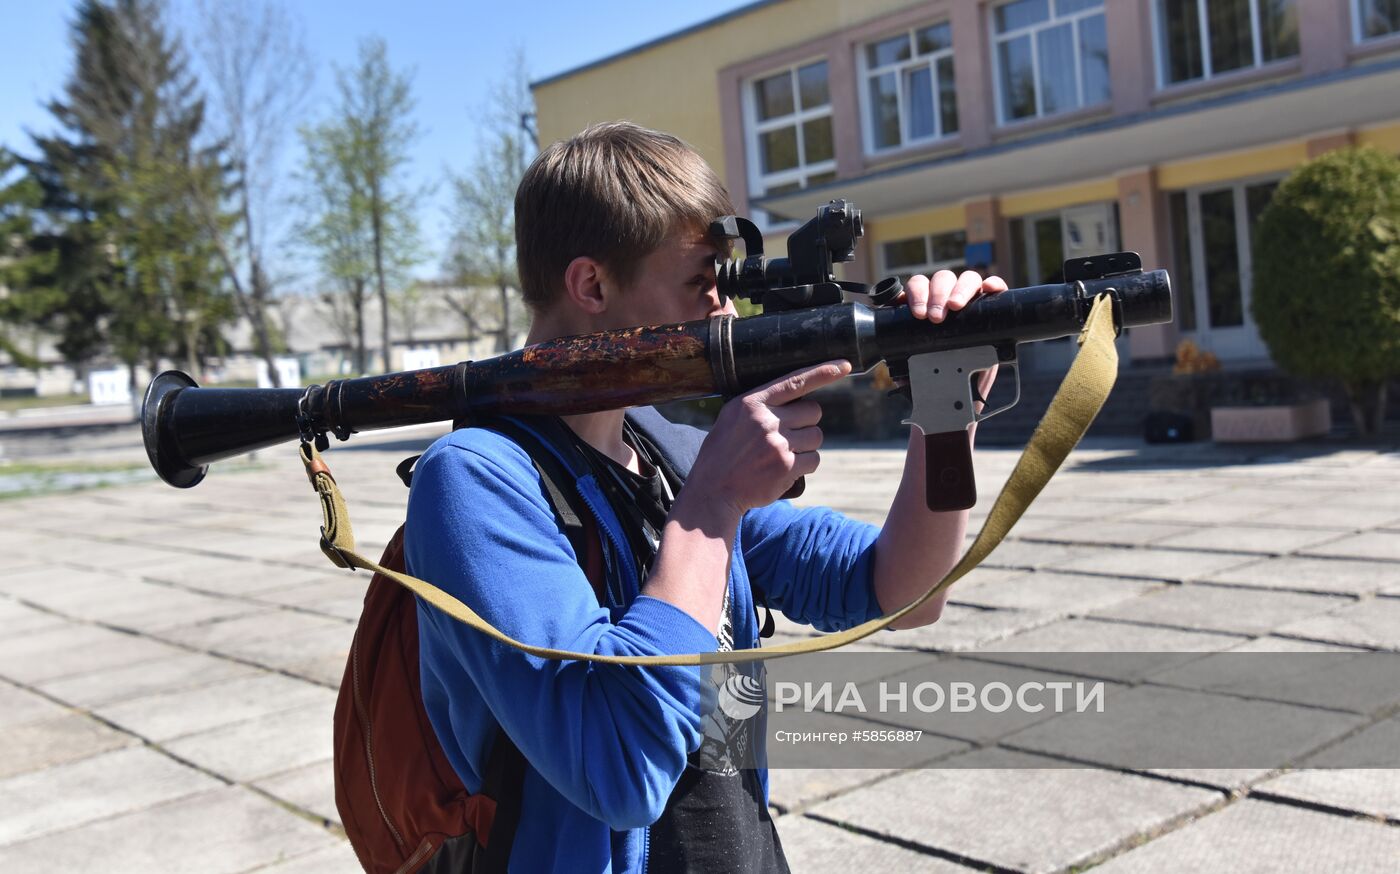 День открытых дверей в одной из частей Нацгвардии Украины